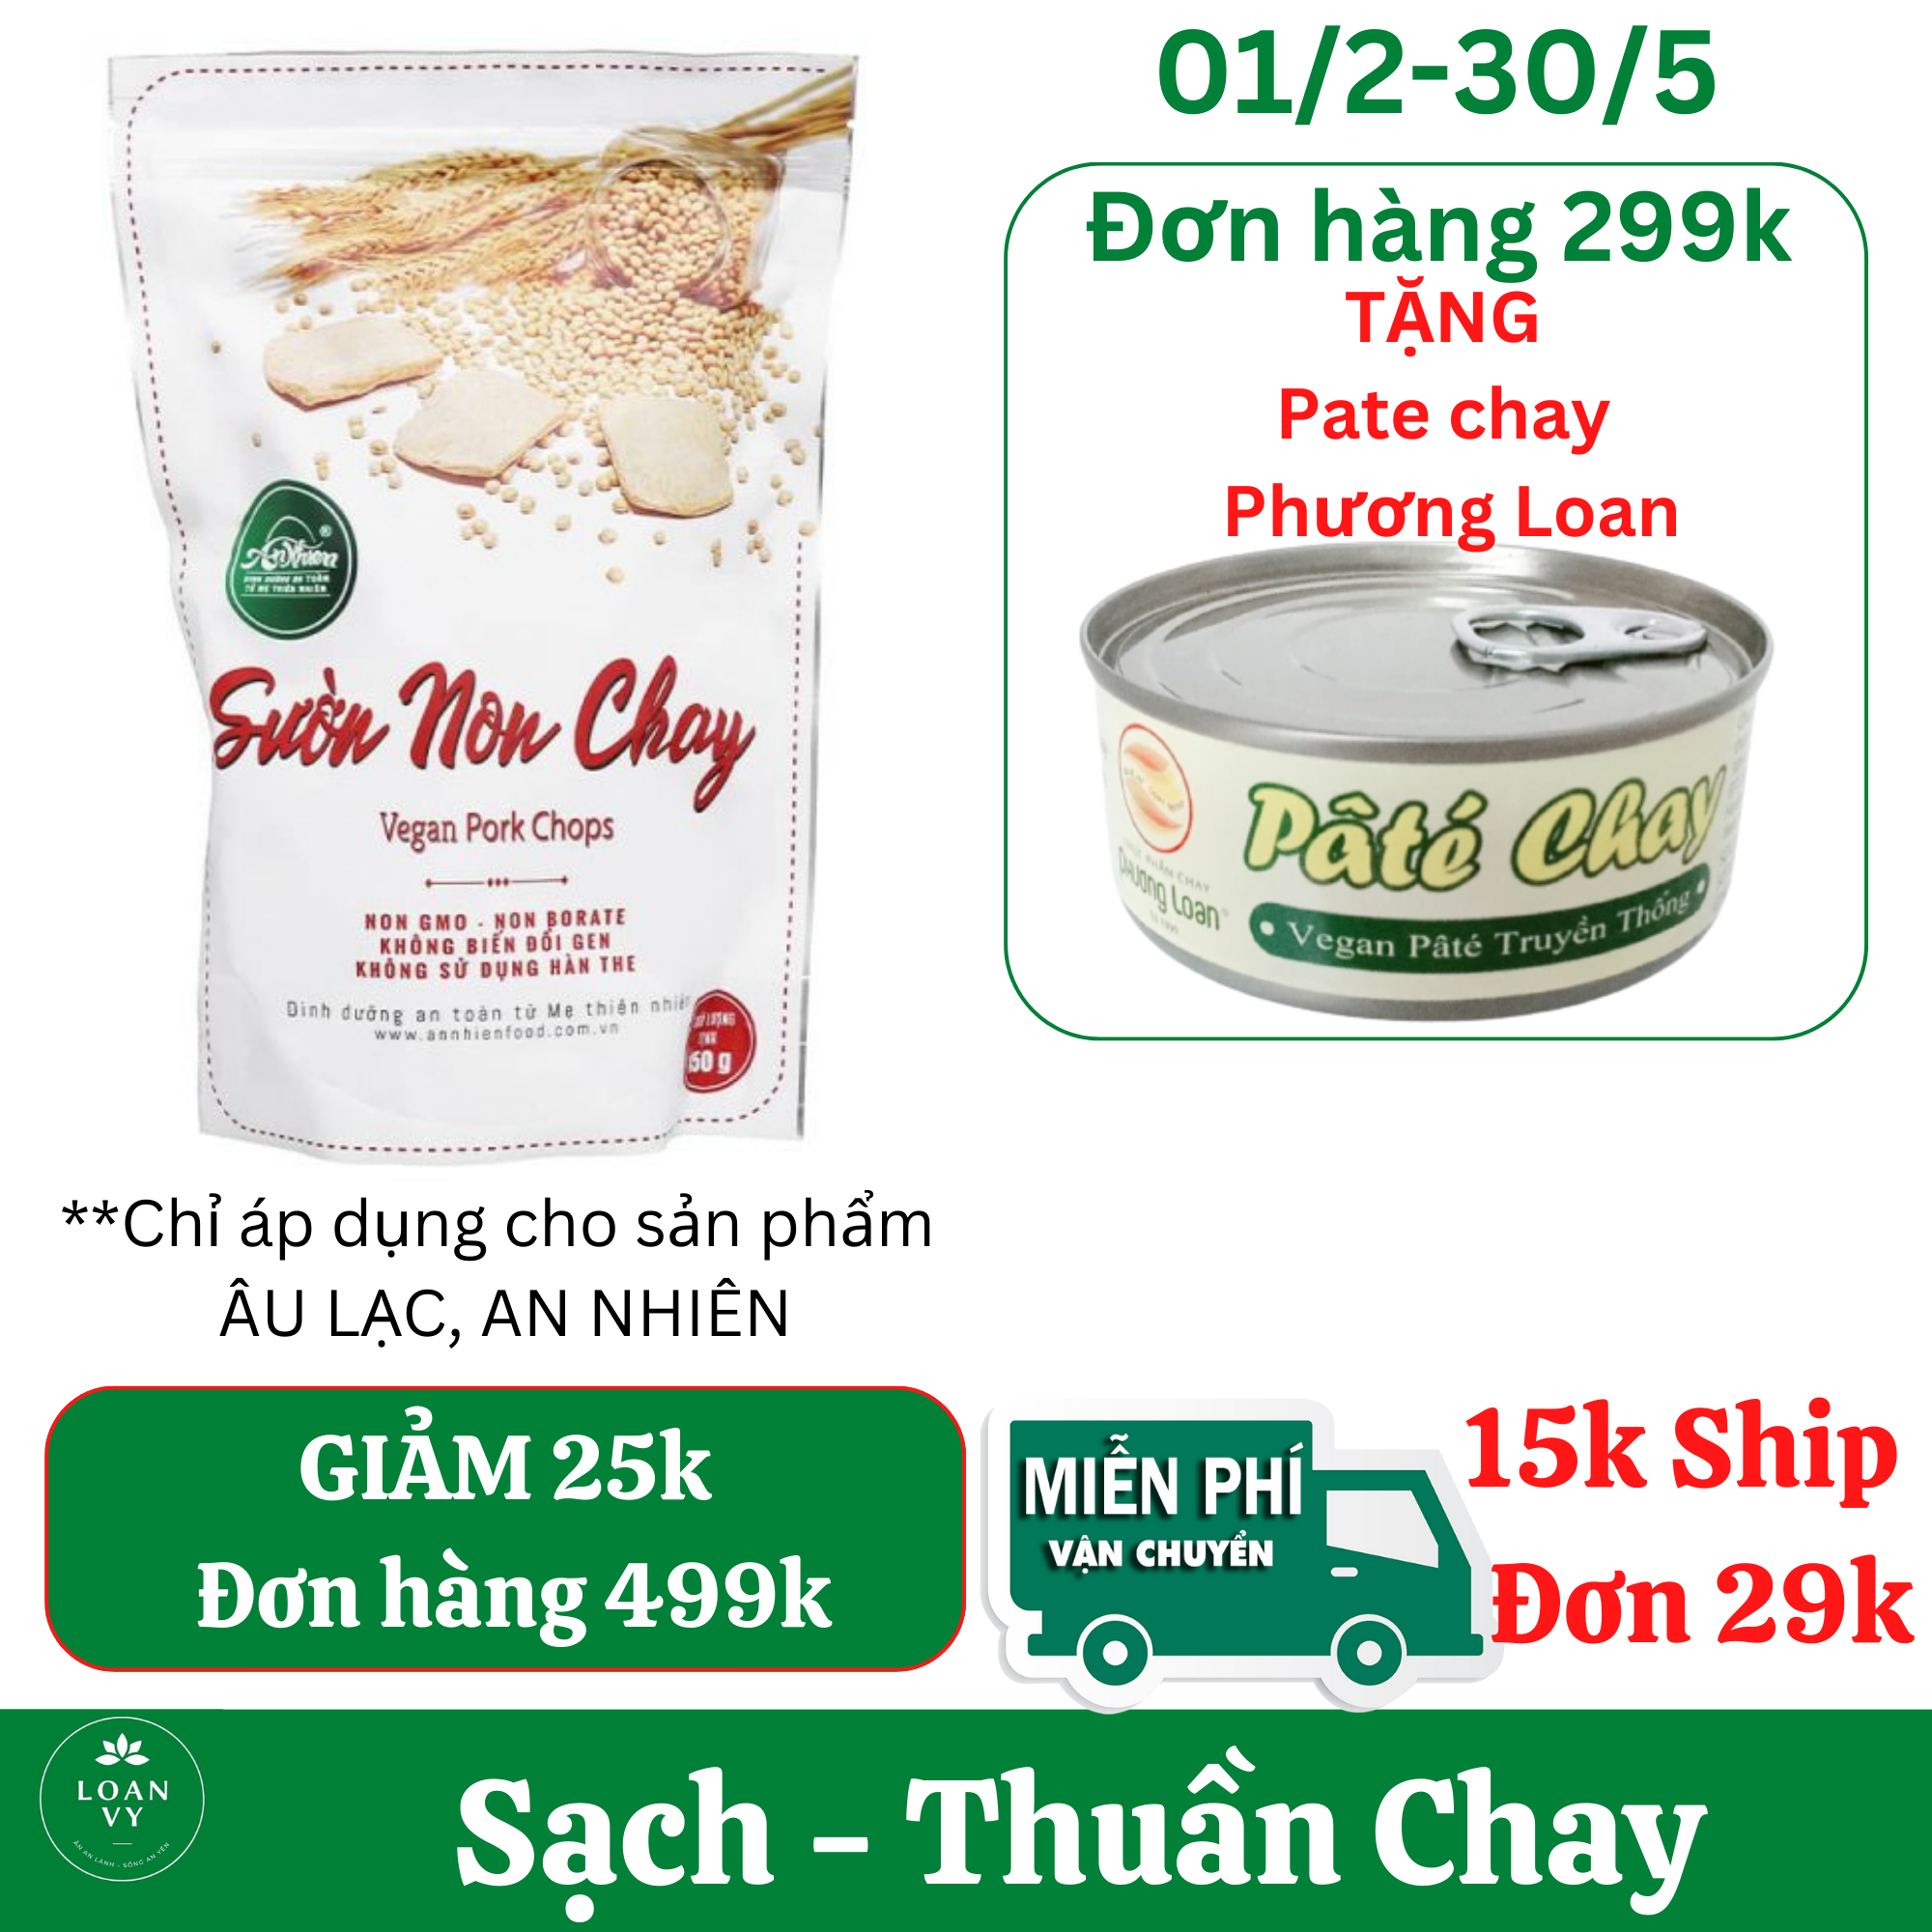 150g Sườn Non Chay An Nhiên -Thực Phẩm Chay Loan Vy + TẶNG Pate Chay